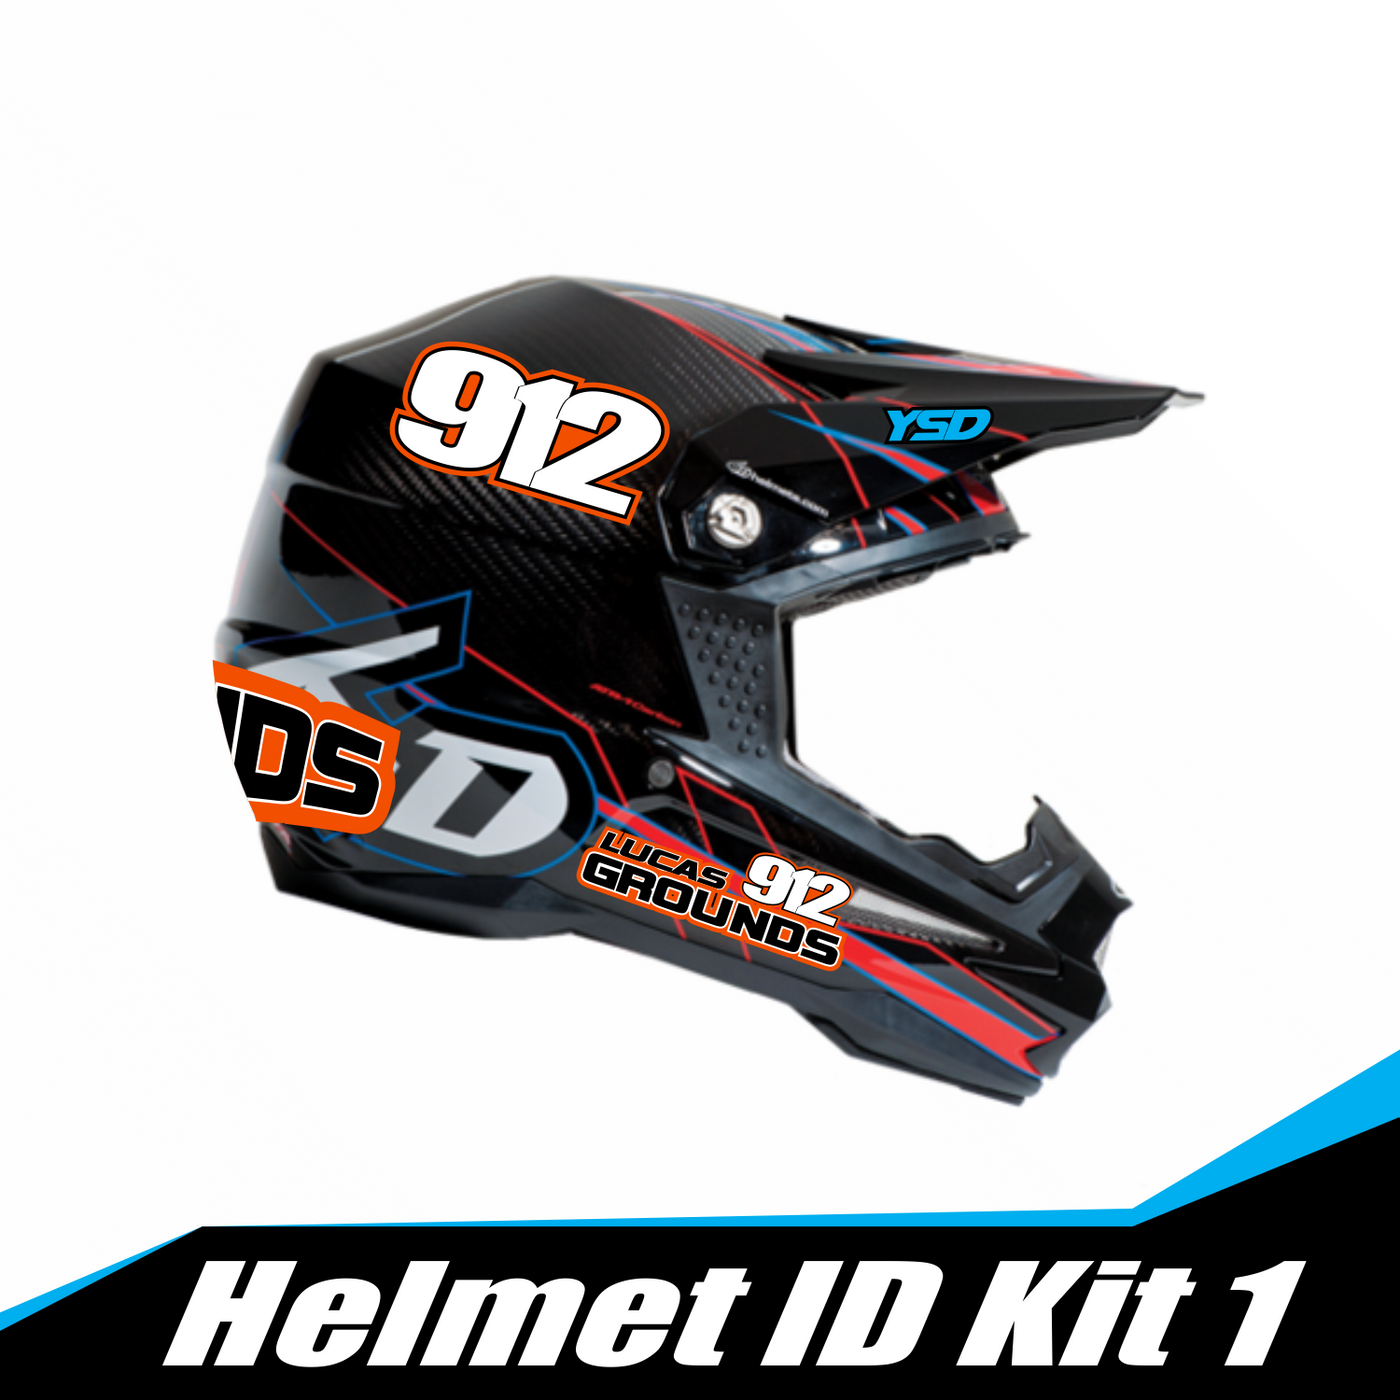 Helmet ID kit 1 - Y&S Designs, LLC